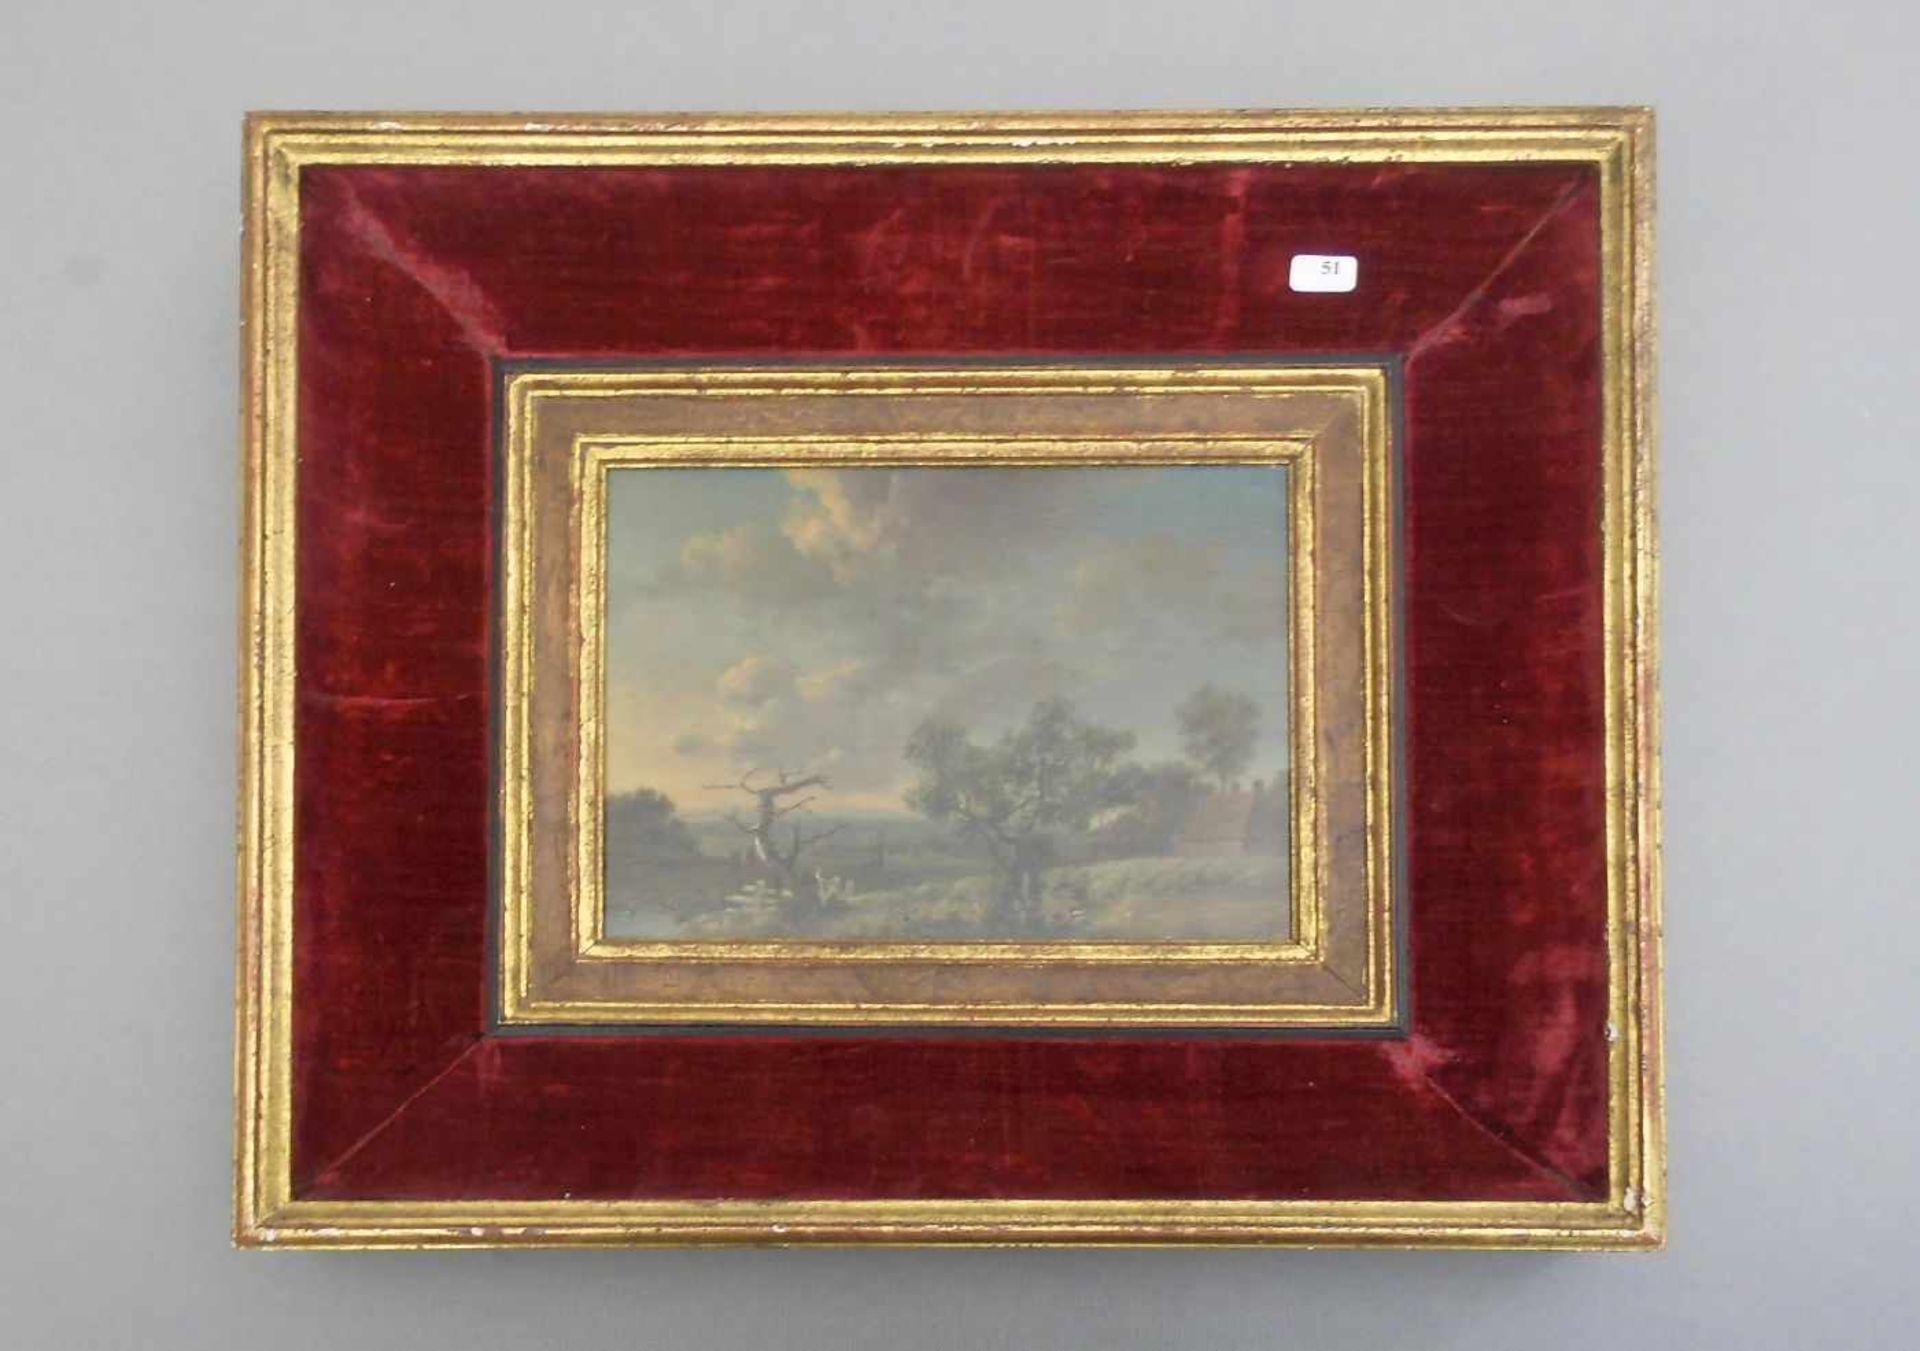 ANONYMUS (Maler der Romantik / 19. Jh.), Gemälde / painting: "Weite Landschaft mit Bachlauf,